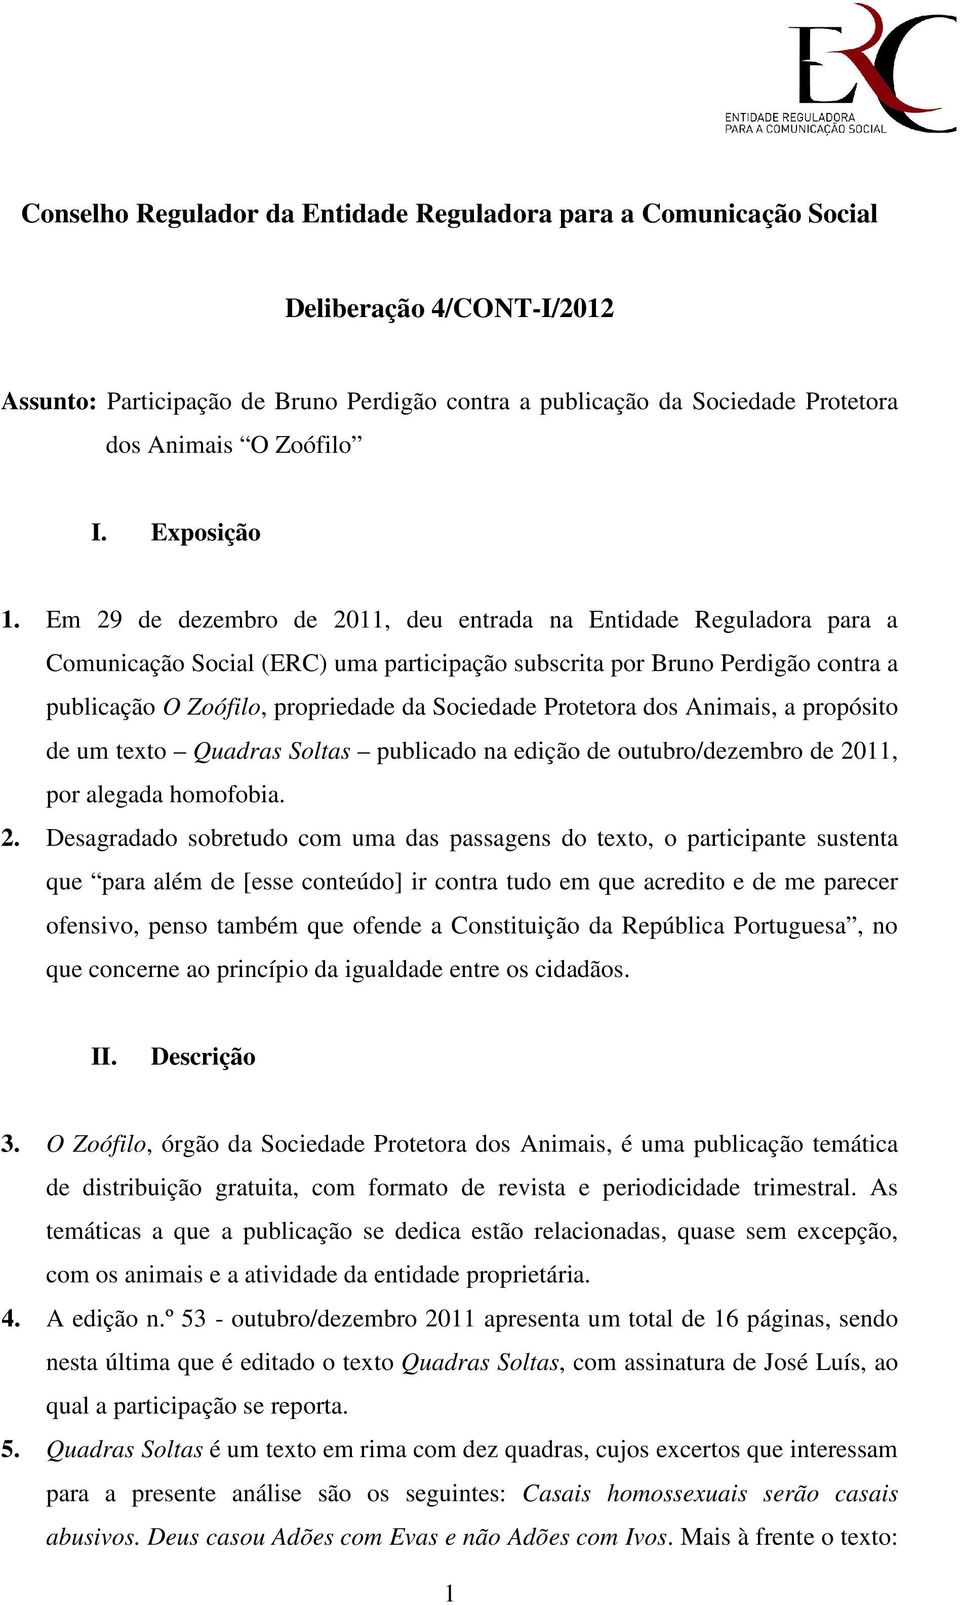 Em 29 de dezembro de 2011, deu entrada na Entidade Reguladora para a Comunicação Social (ERC) uma participação subscrita por Bruno Perdigão contra a publicação O Zoófilo, propriedade da Sociedade